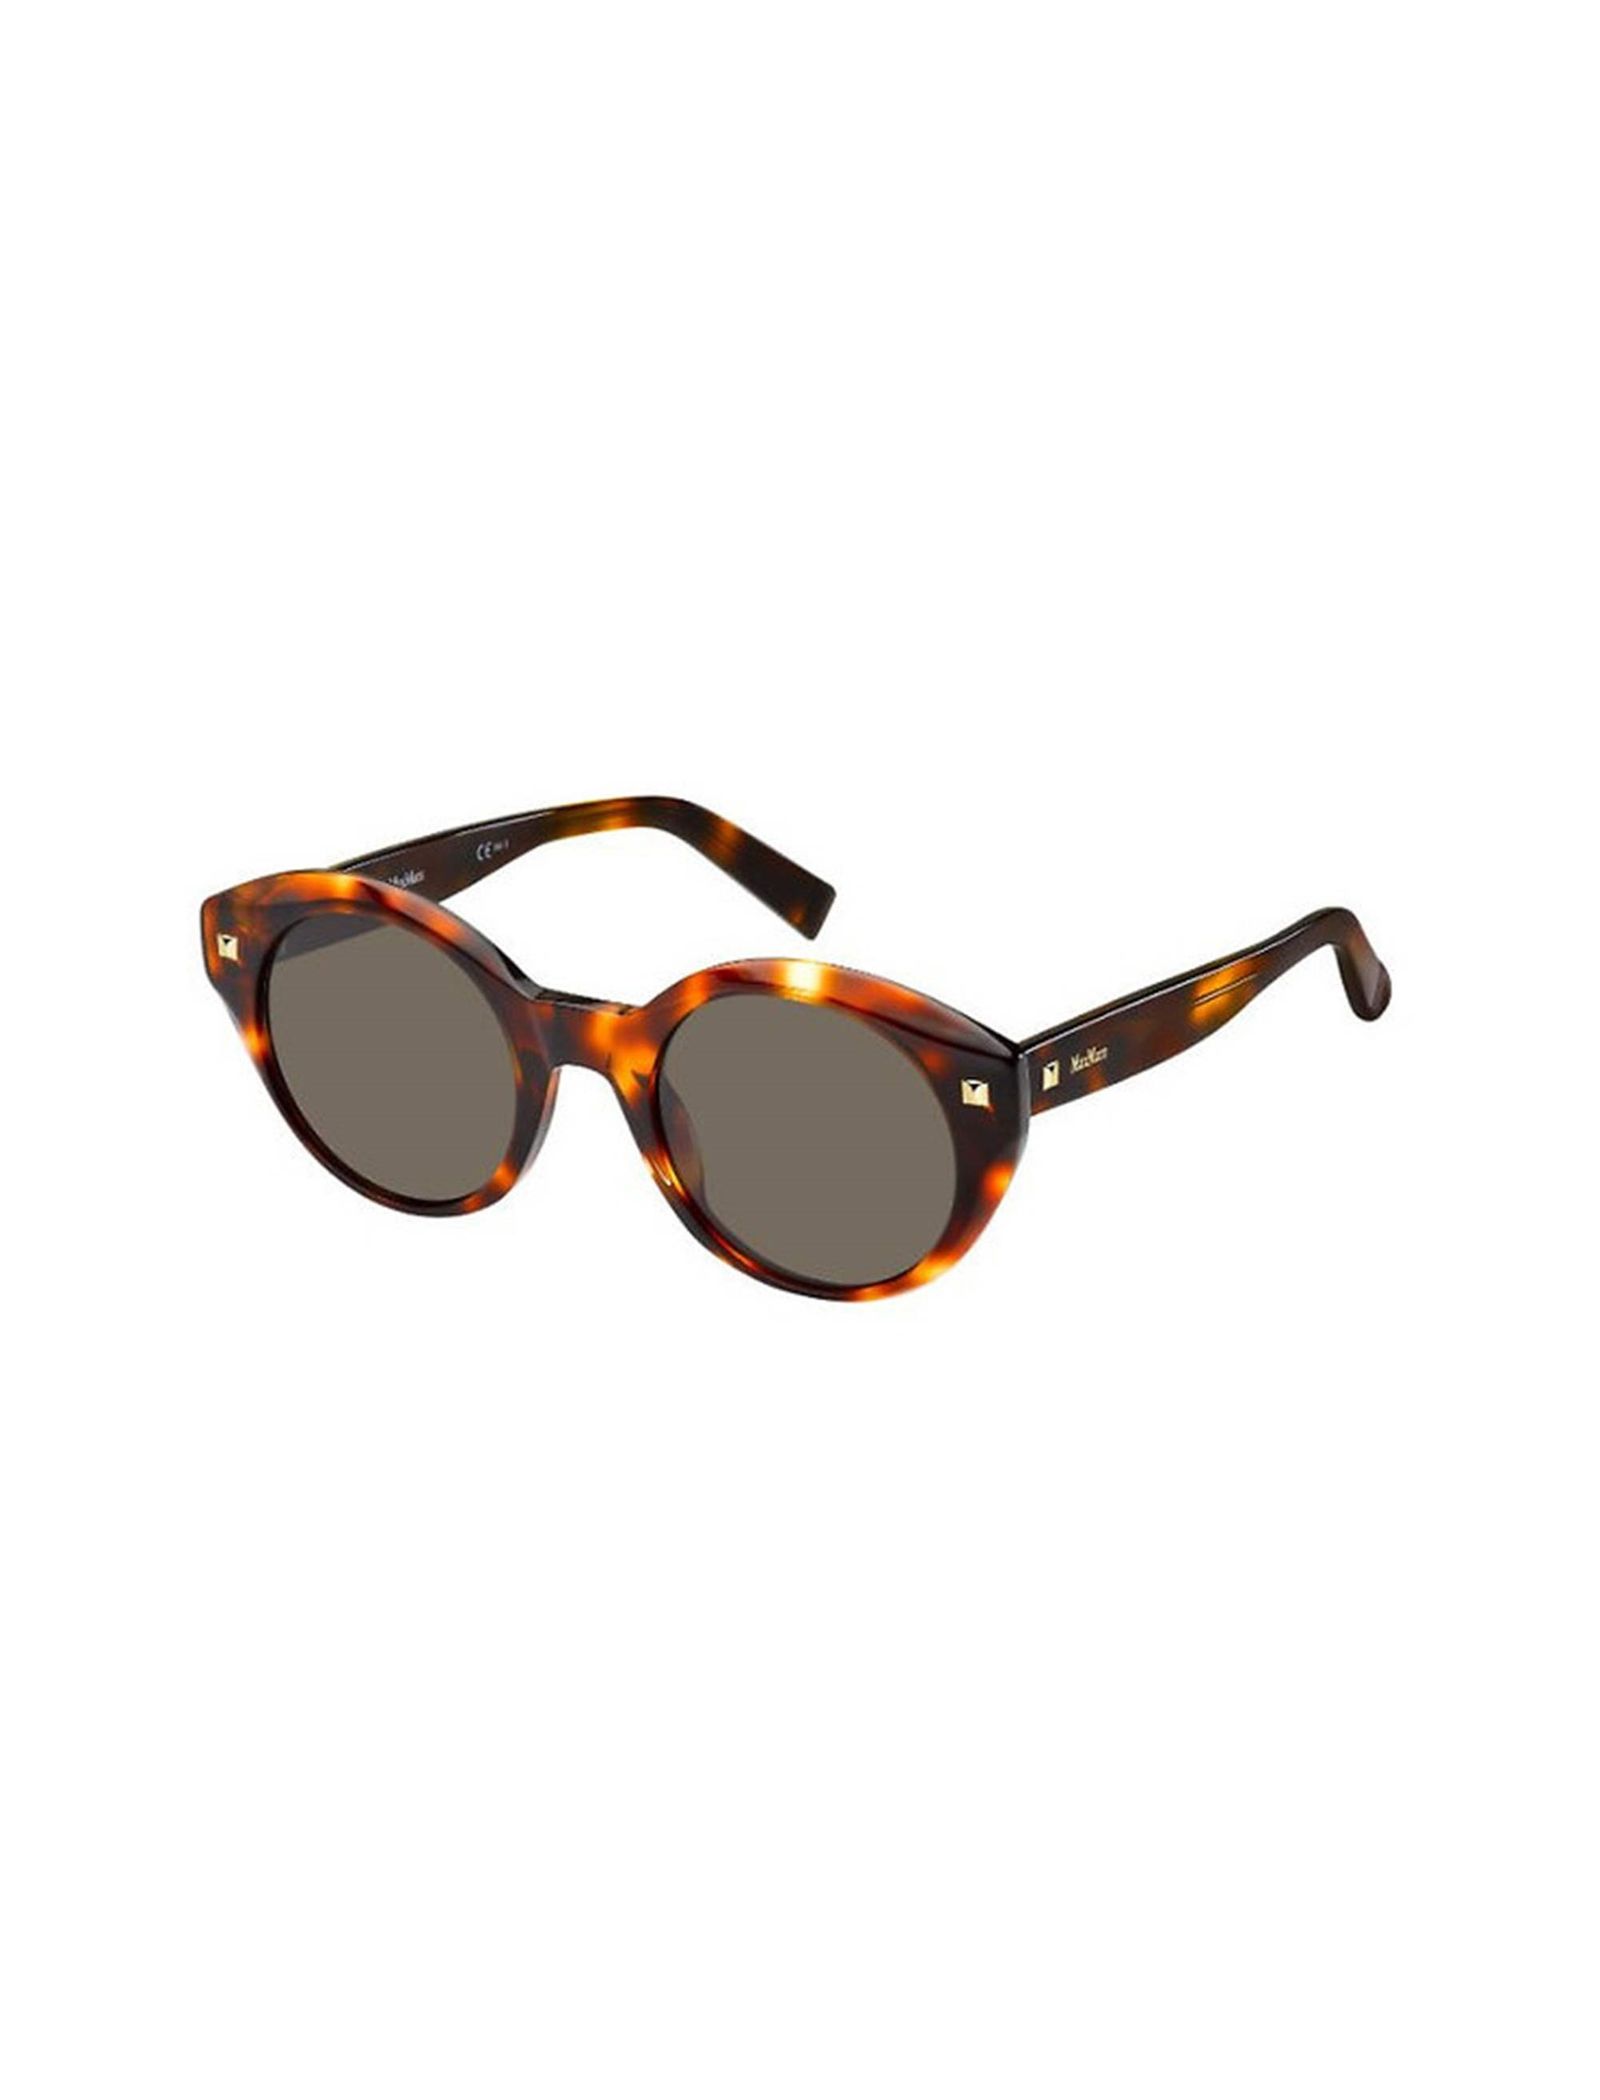 عینک آفتابی گربه ای زنانه - مکس مارا - قهوه اي و نارنجي - 1